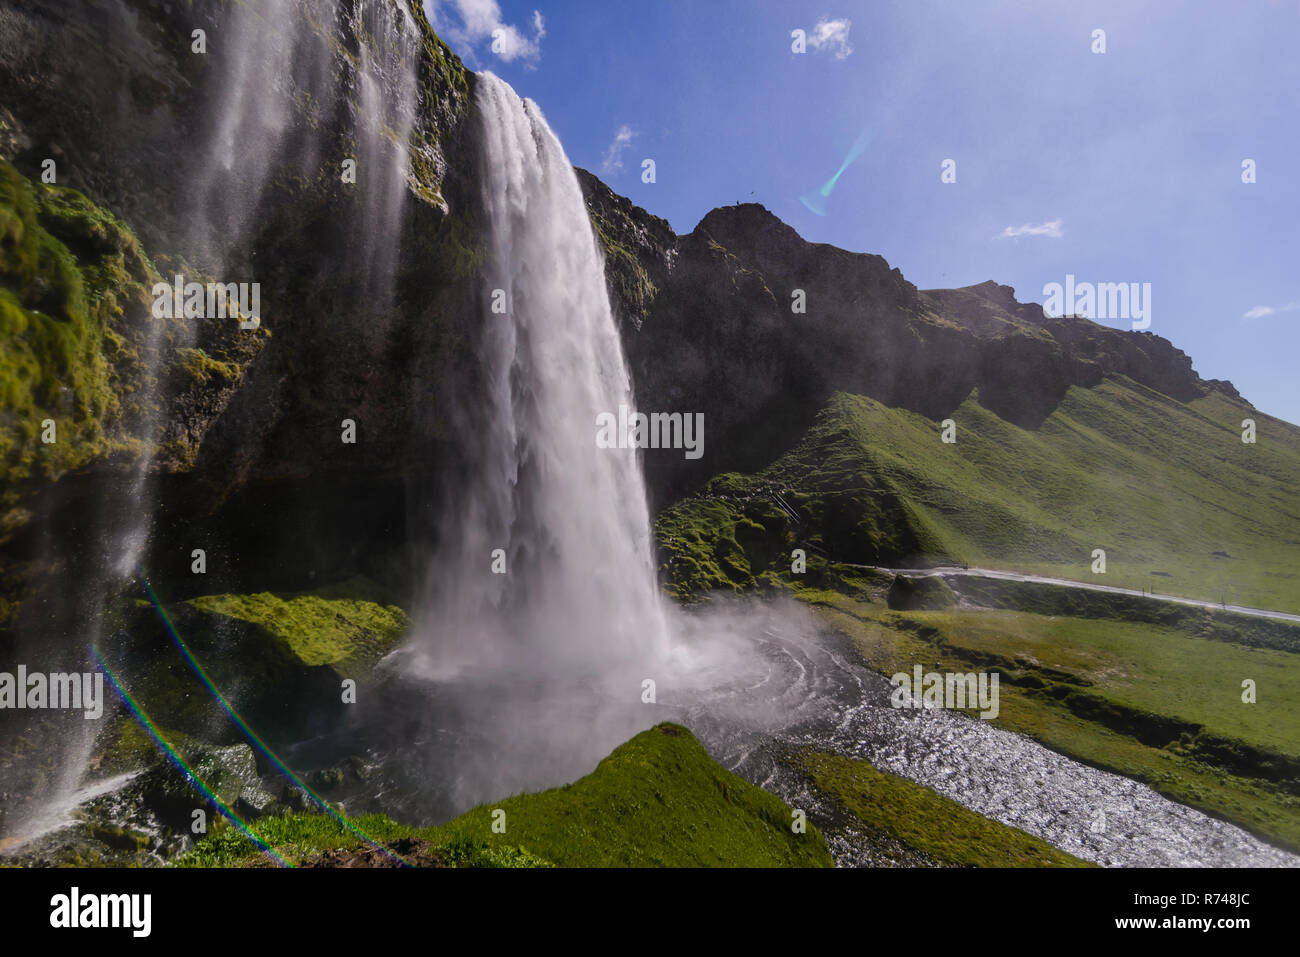 Seljalandsfoss waterfall, Iceland Stock Photo